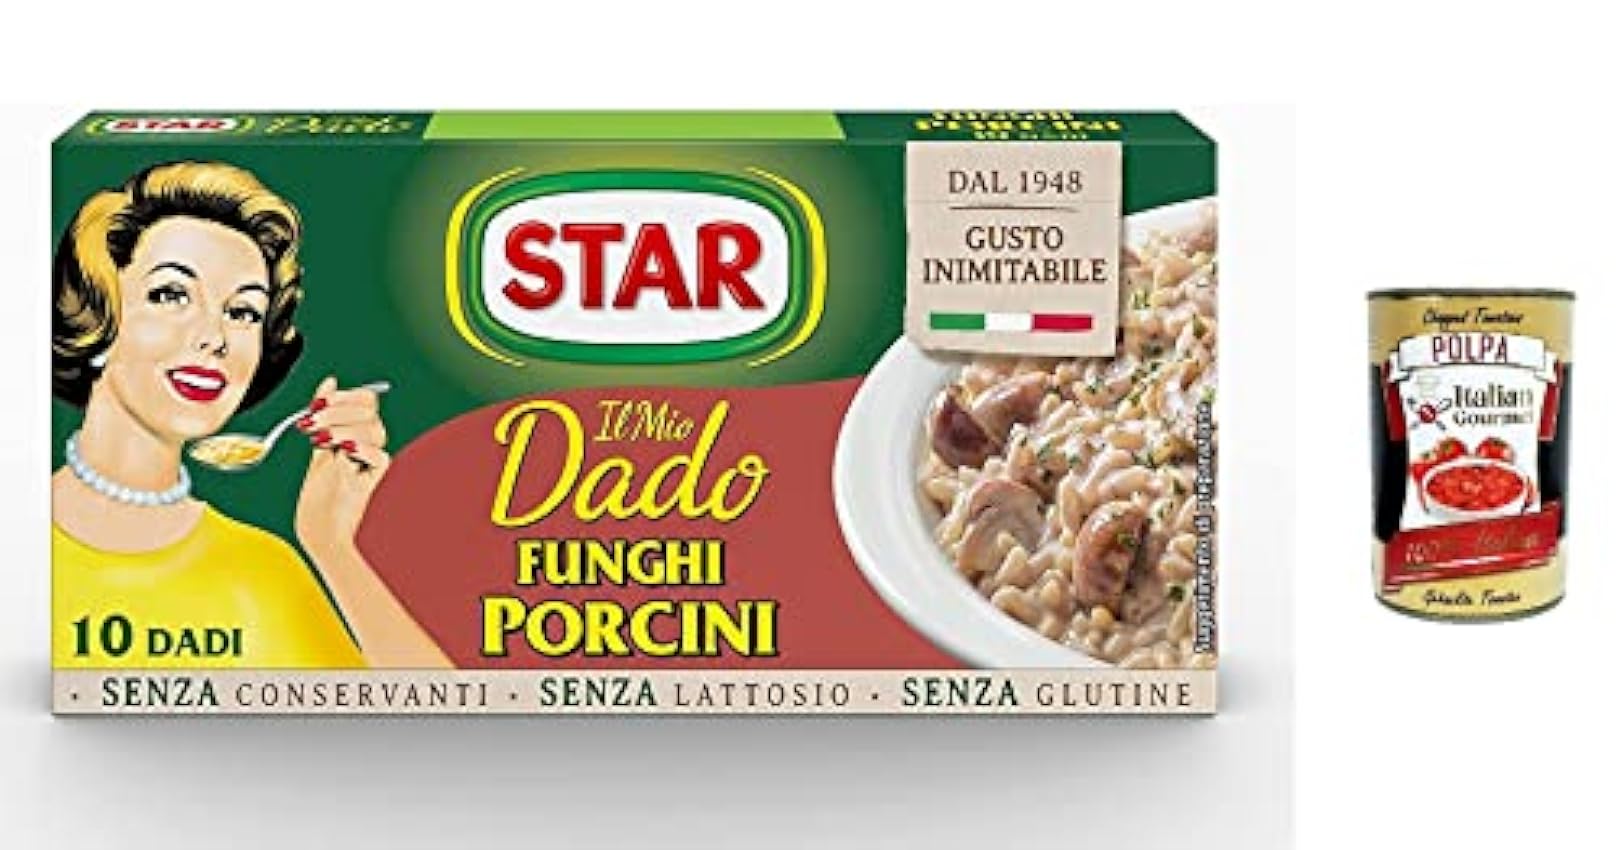 Star Dado Funghi Porcini Brodo Lot de 24 cubes de soupe